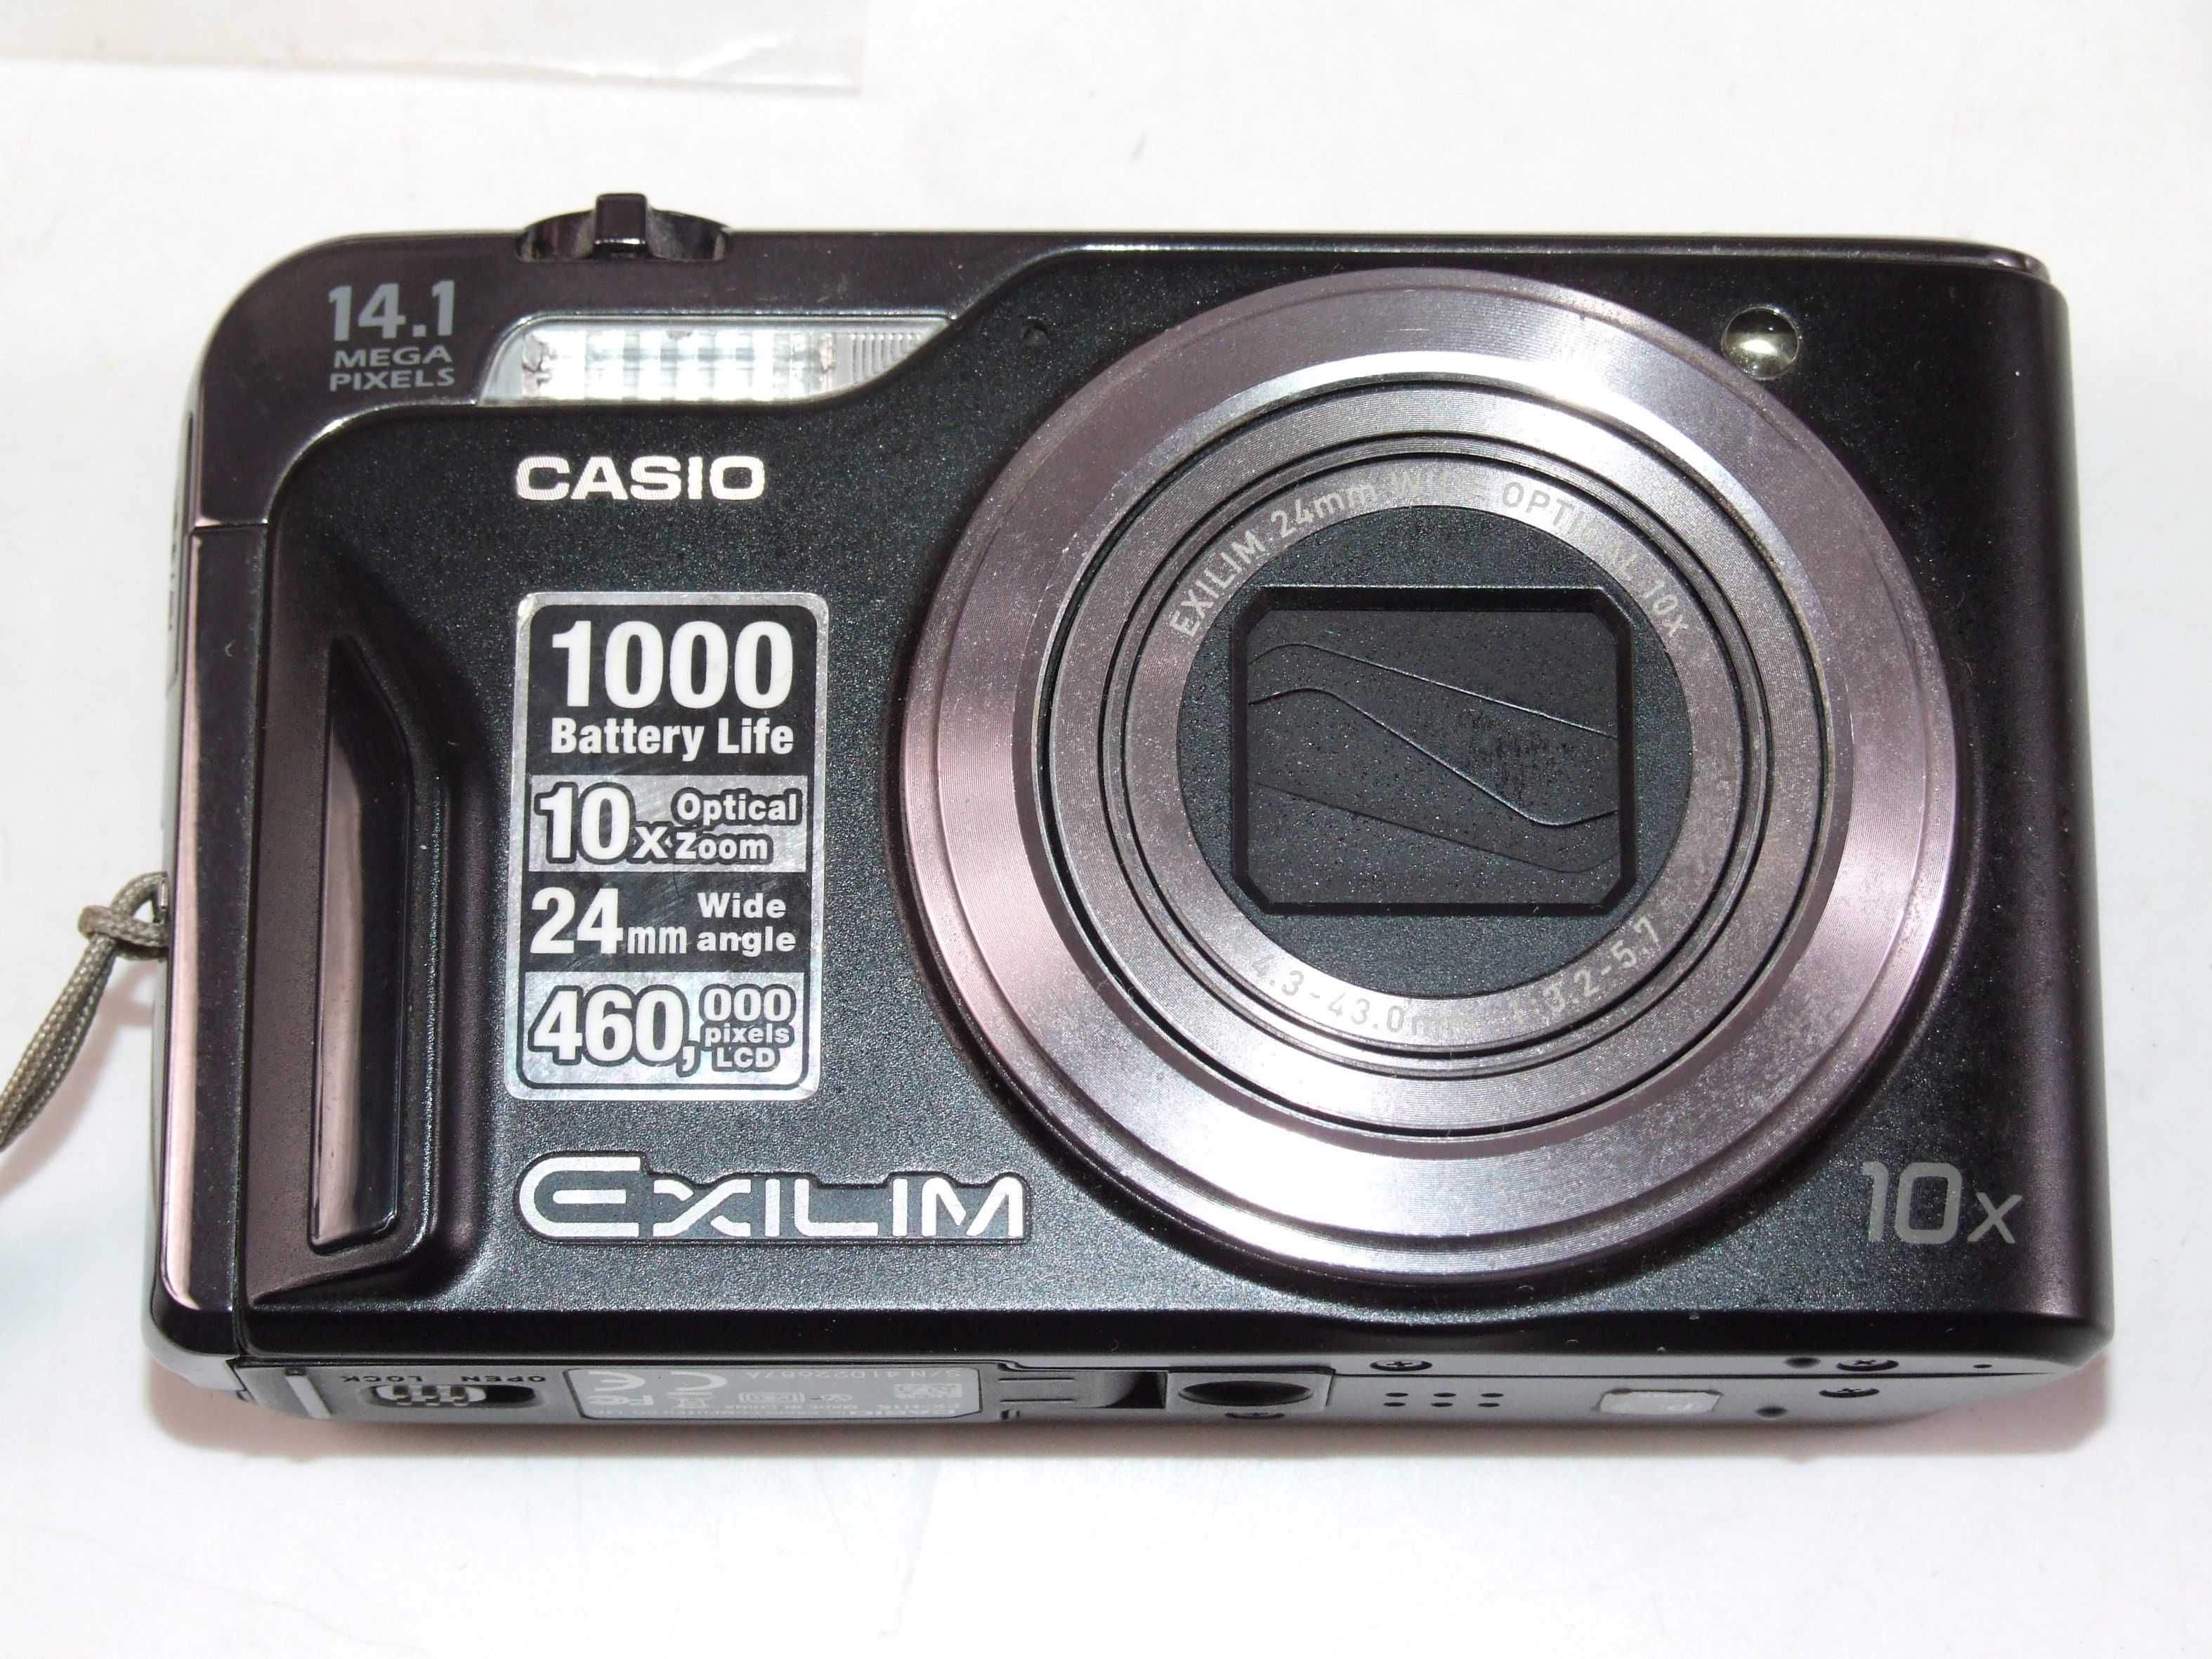 Camera foto CASIO EX-H15 foarte performanta (14.1 MP), practica, NOUA